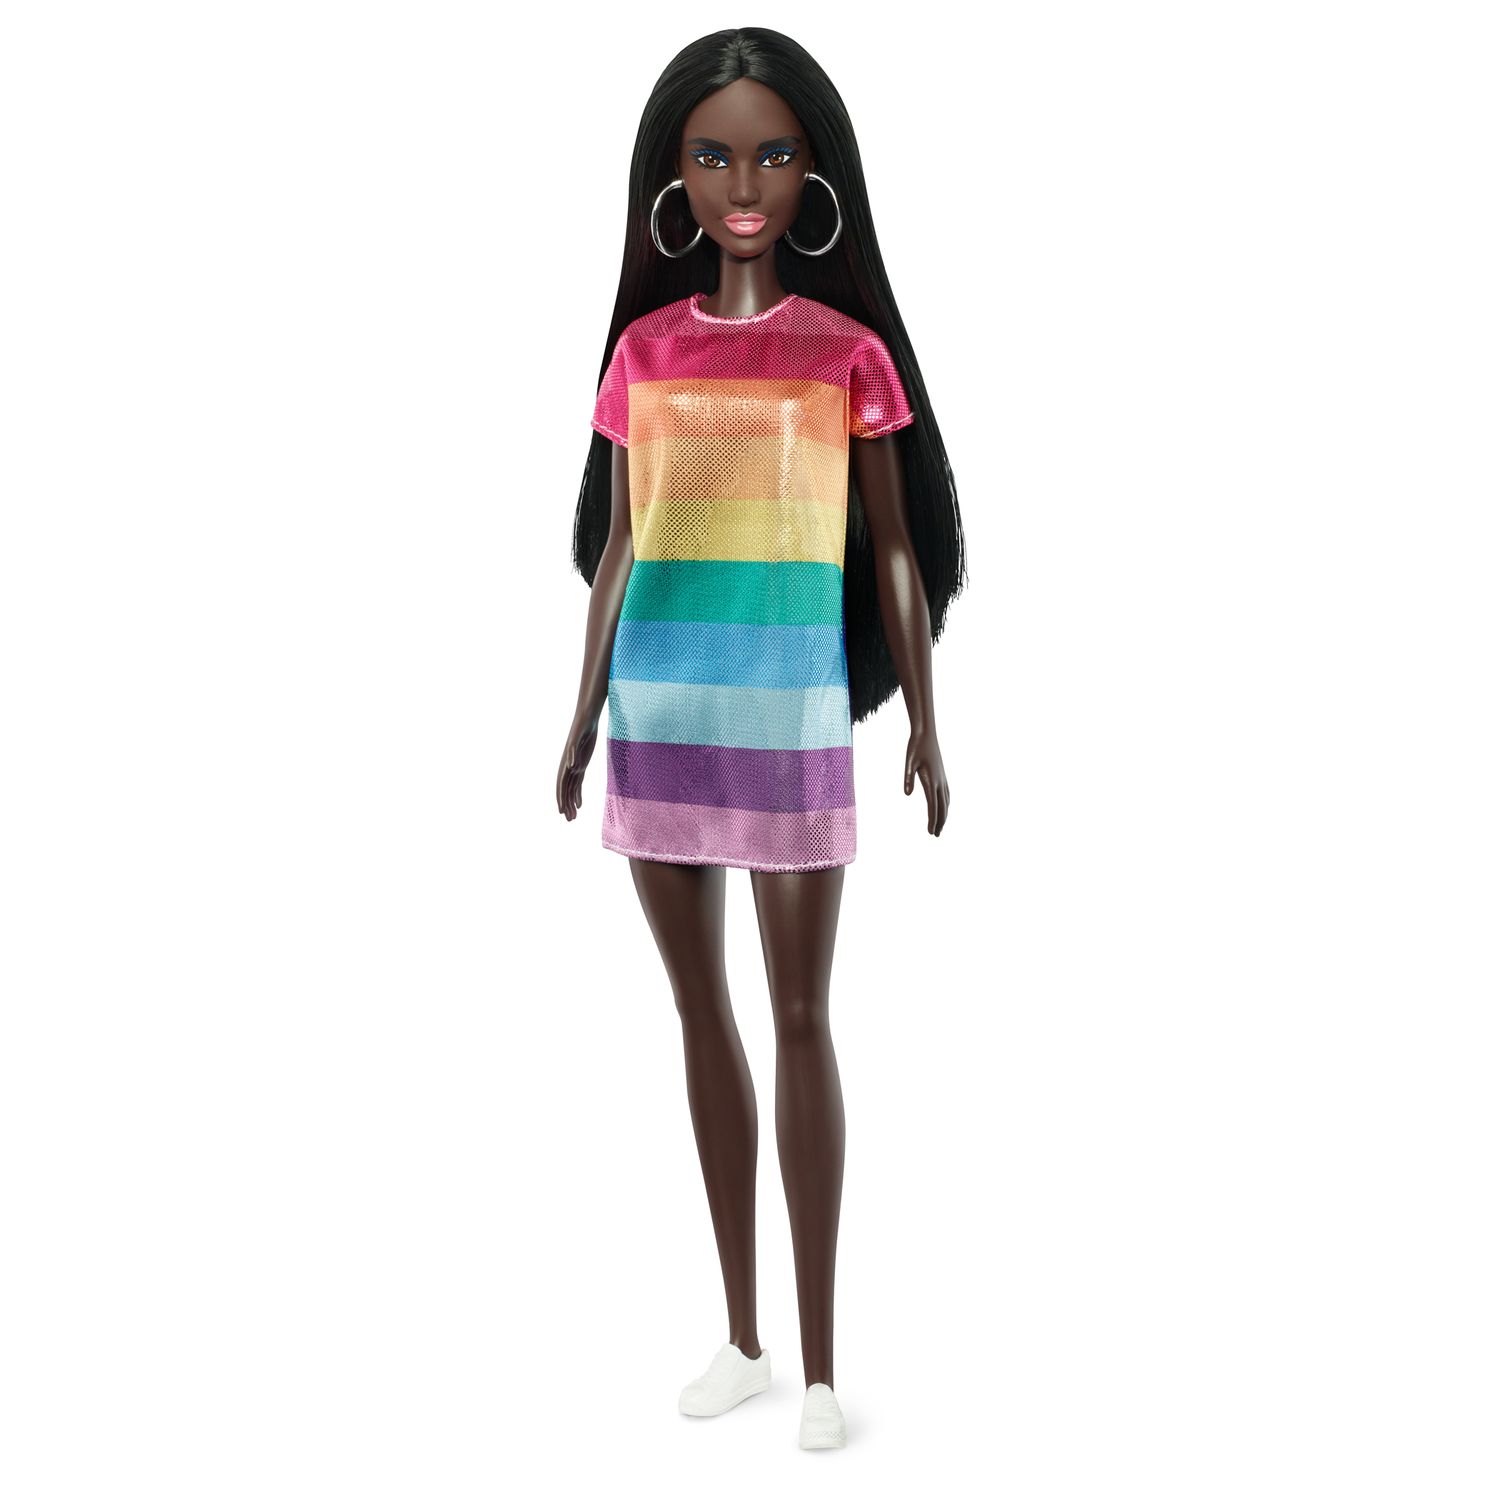 Barbie Fashionista Rainbow Bright Doll